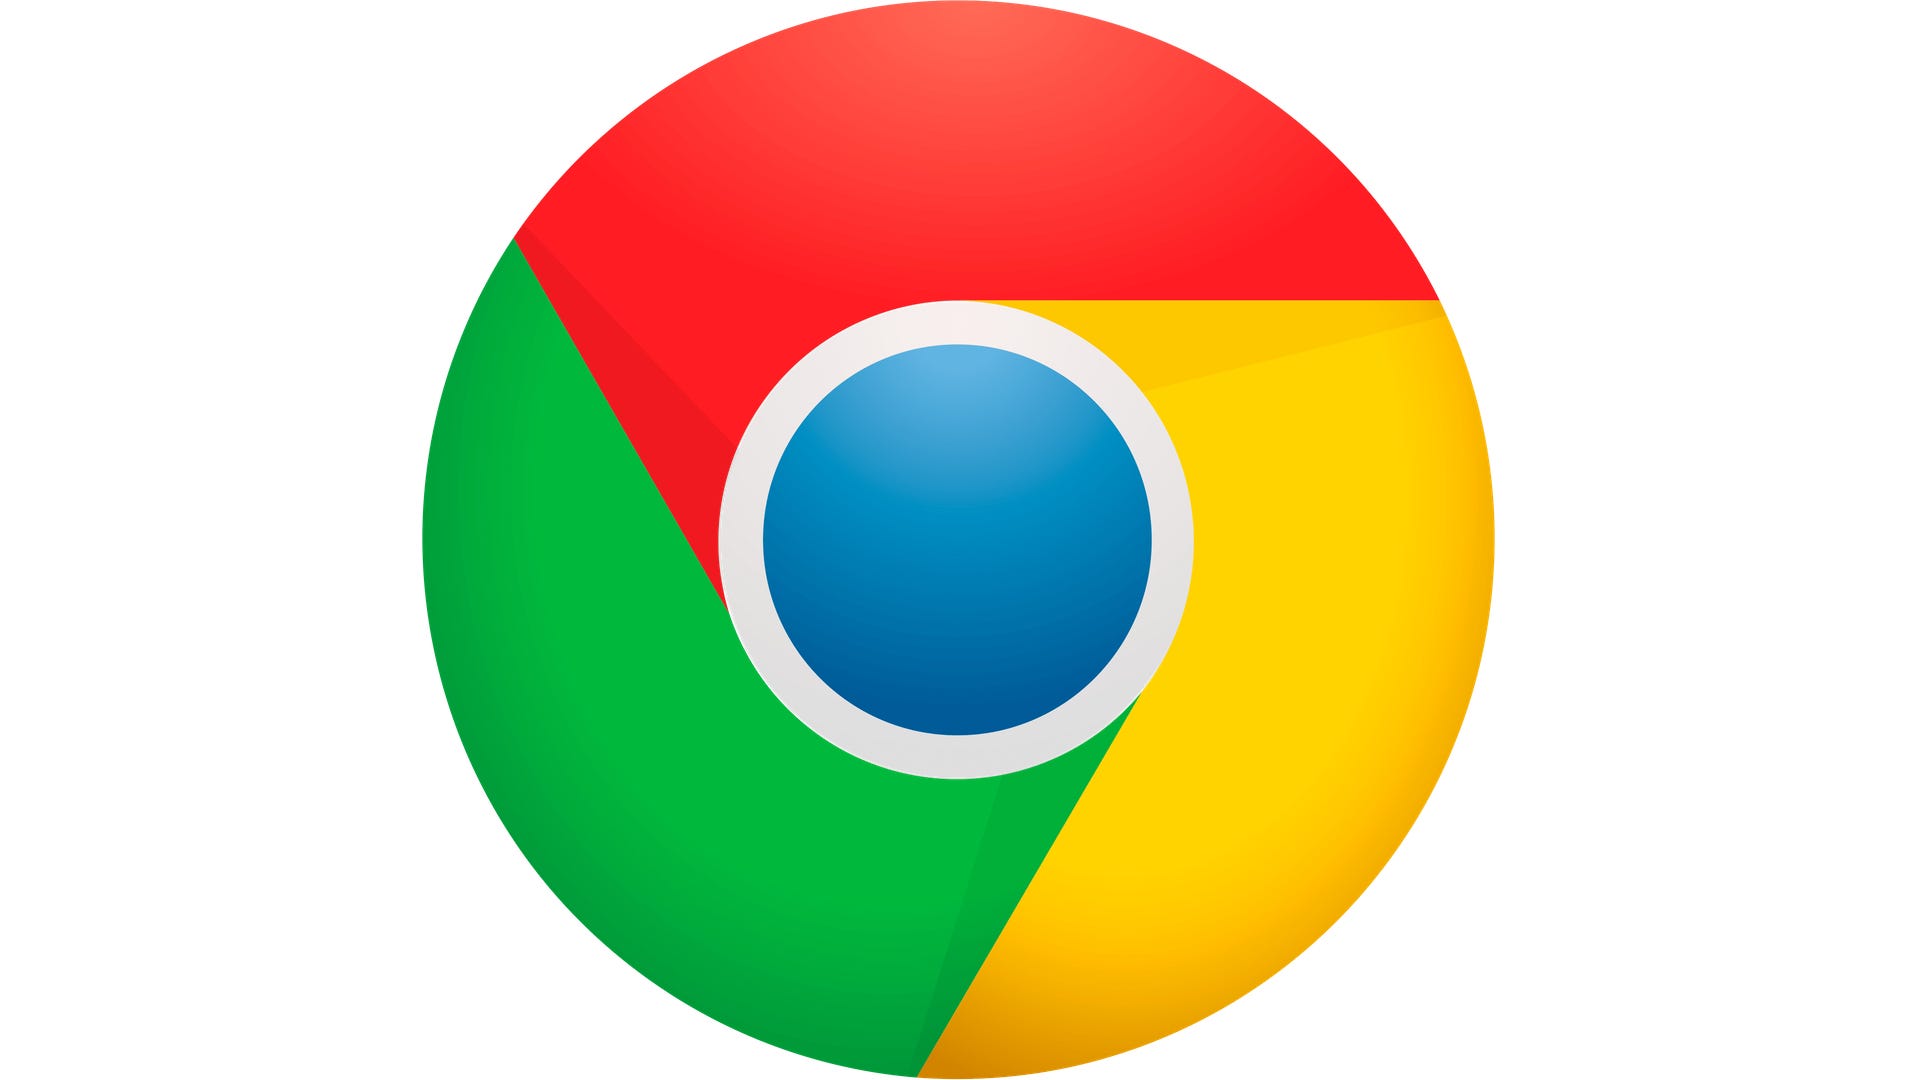 Le logo de Google Chrome sur un fond blanc